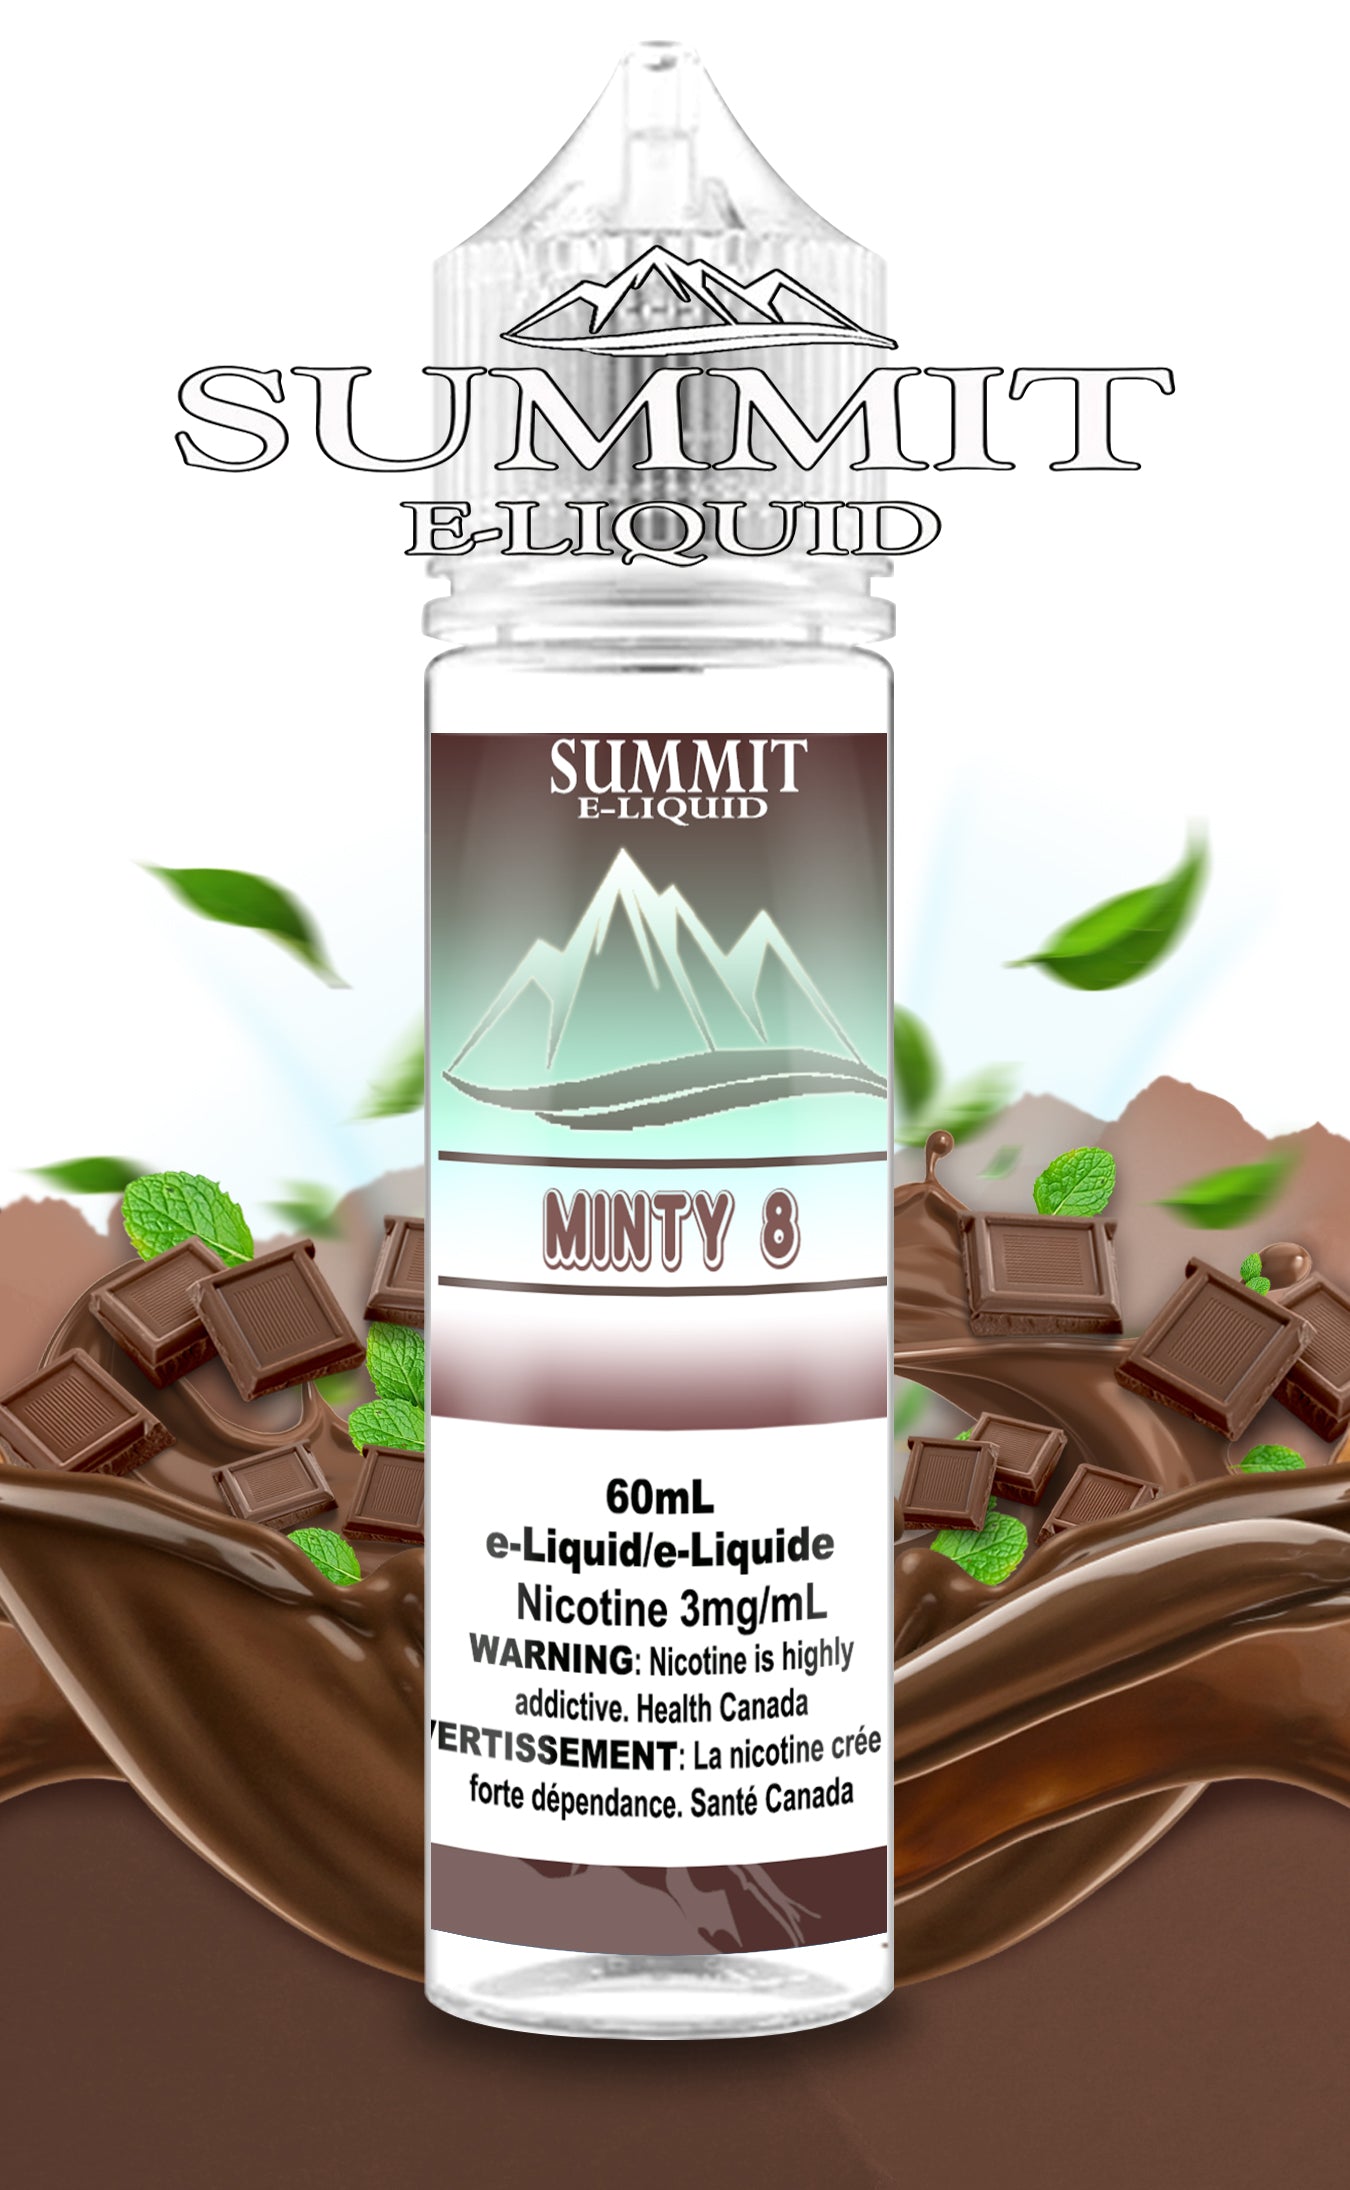 SUMMIT - MINTY 8